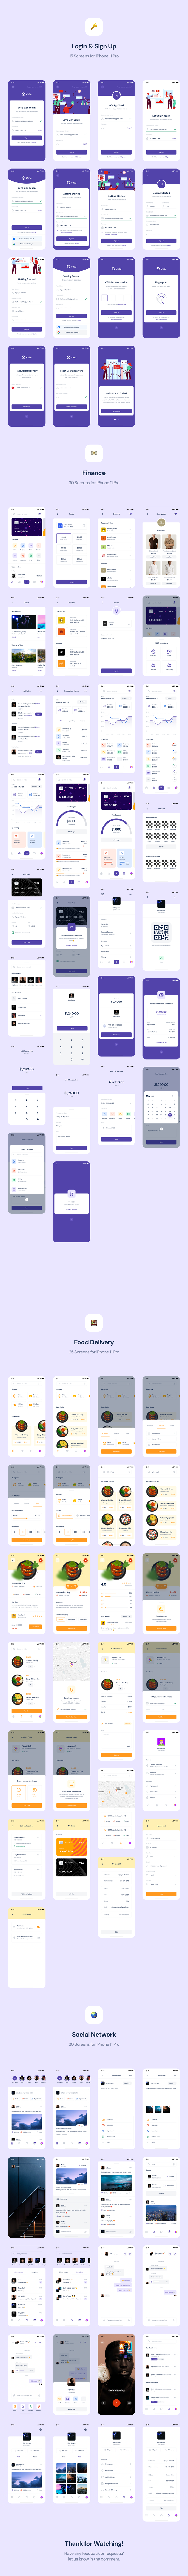 CaBu Multi-Purpose iOS UI Kit - 1